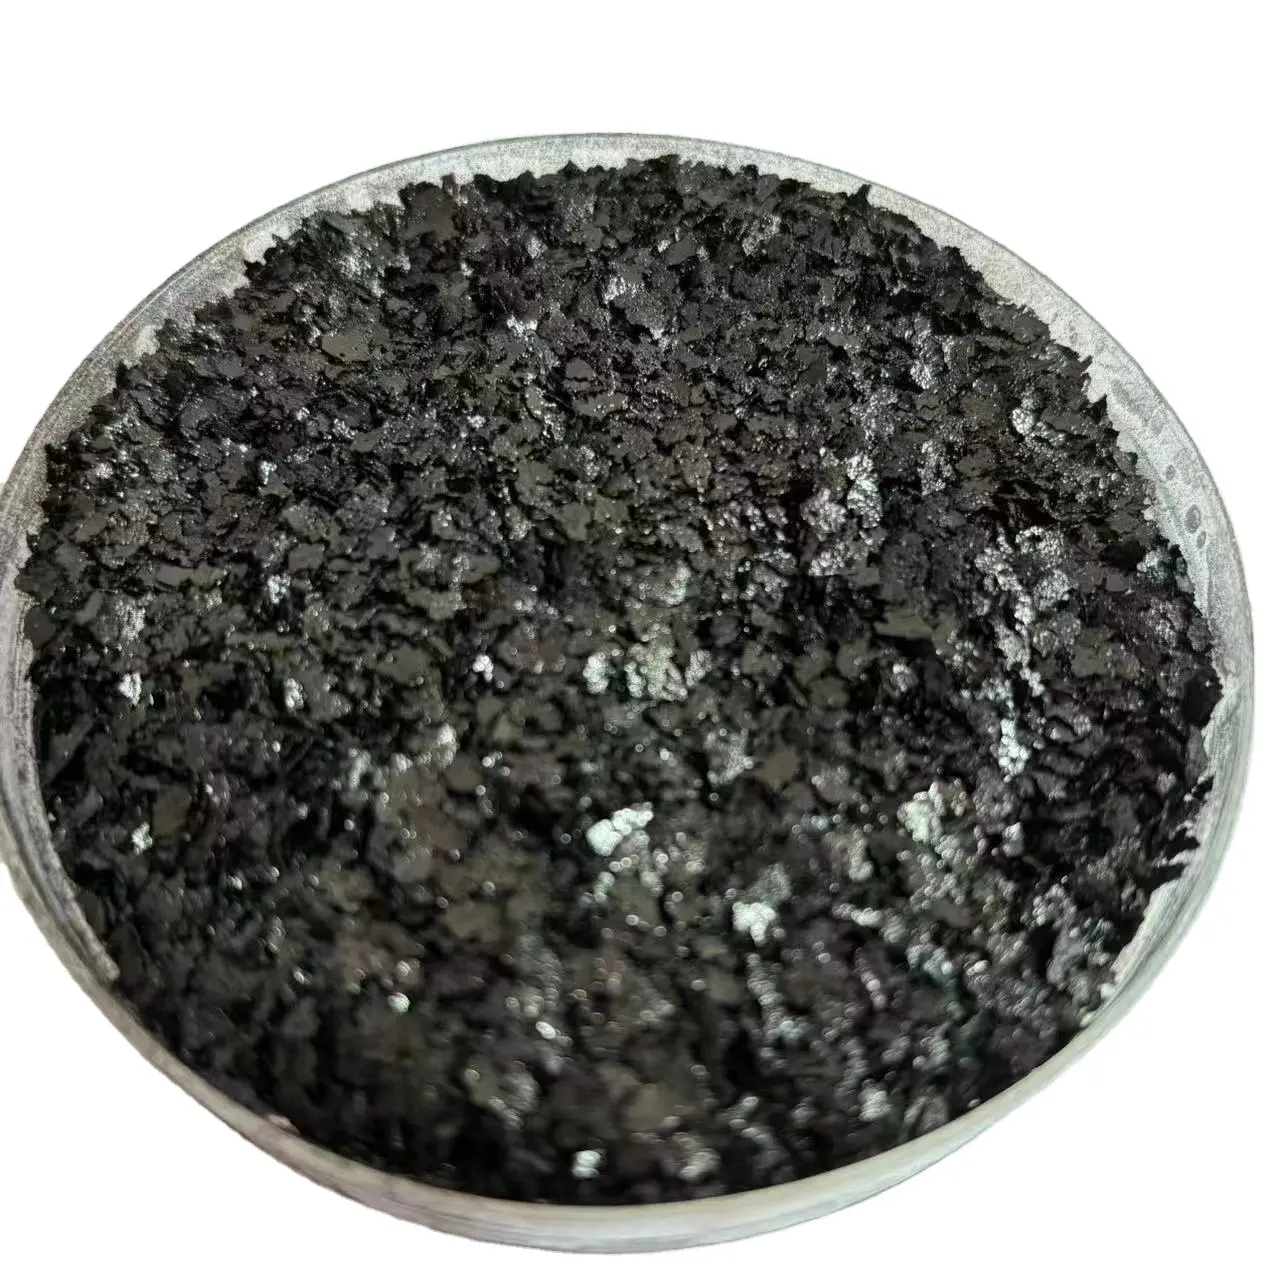 Serpihan potasium humate bersertifikat organik dengan kandungan asam humik 65% harga pabrik yang dapat disesuaikan